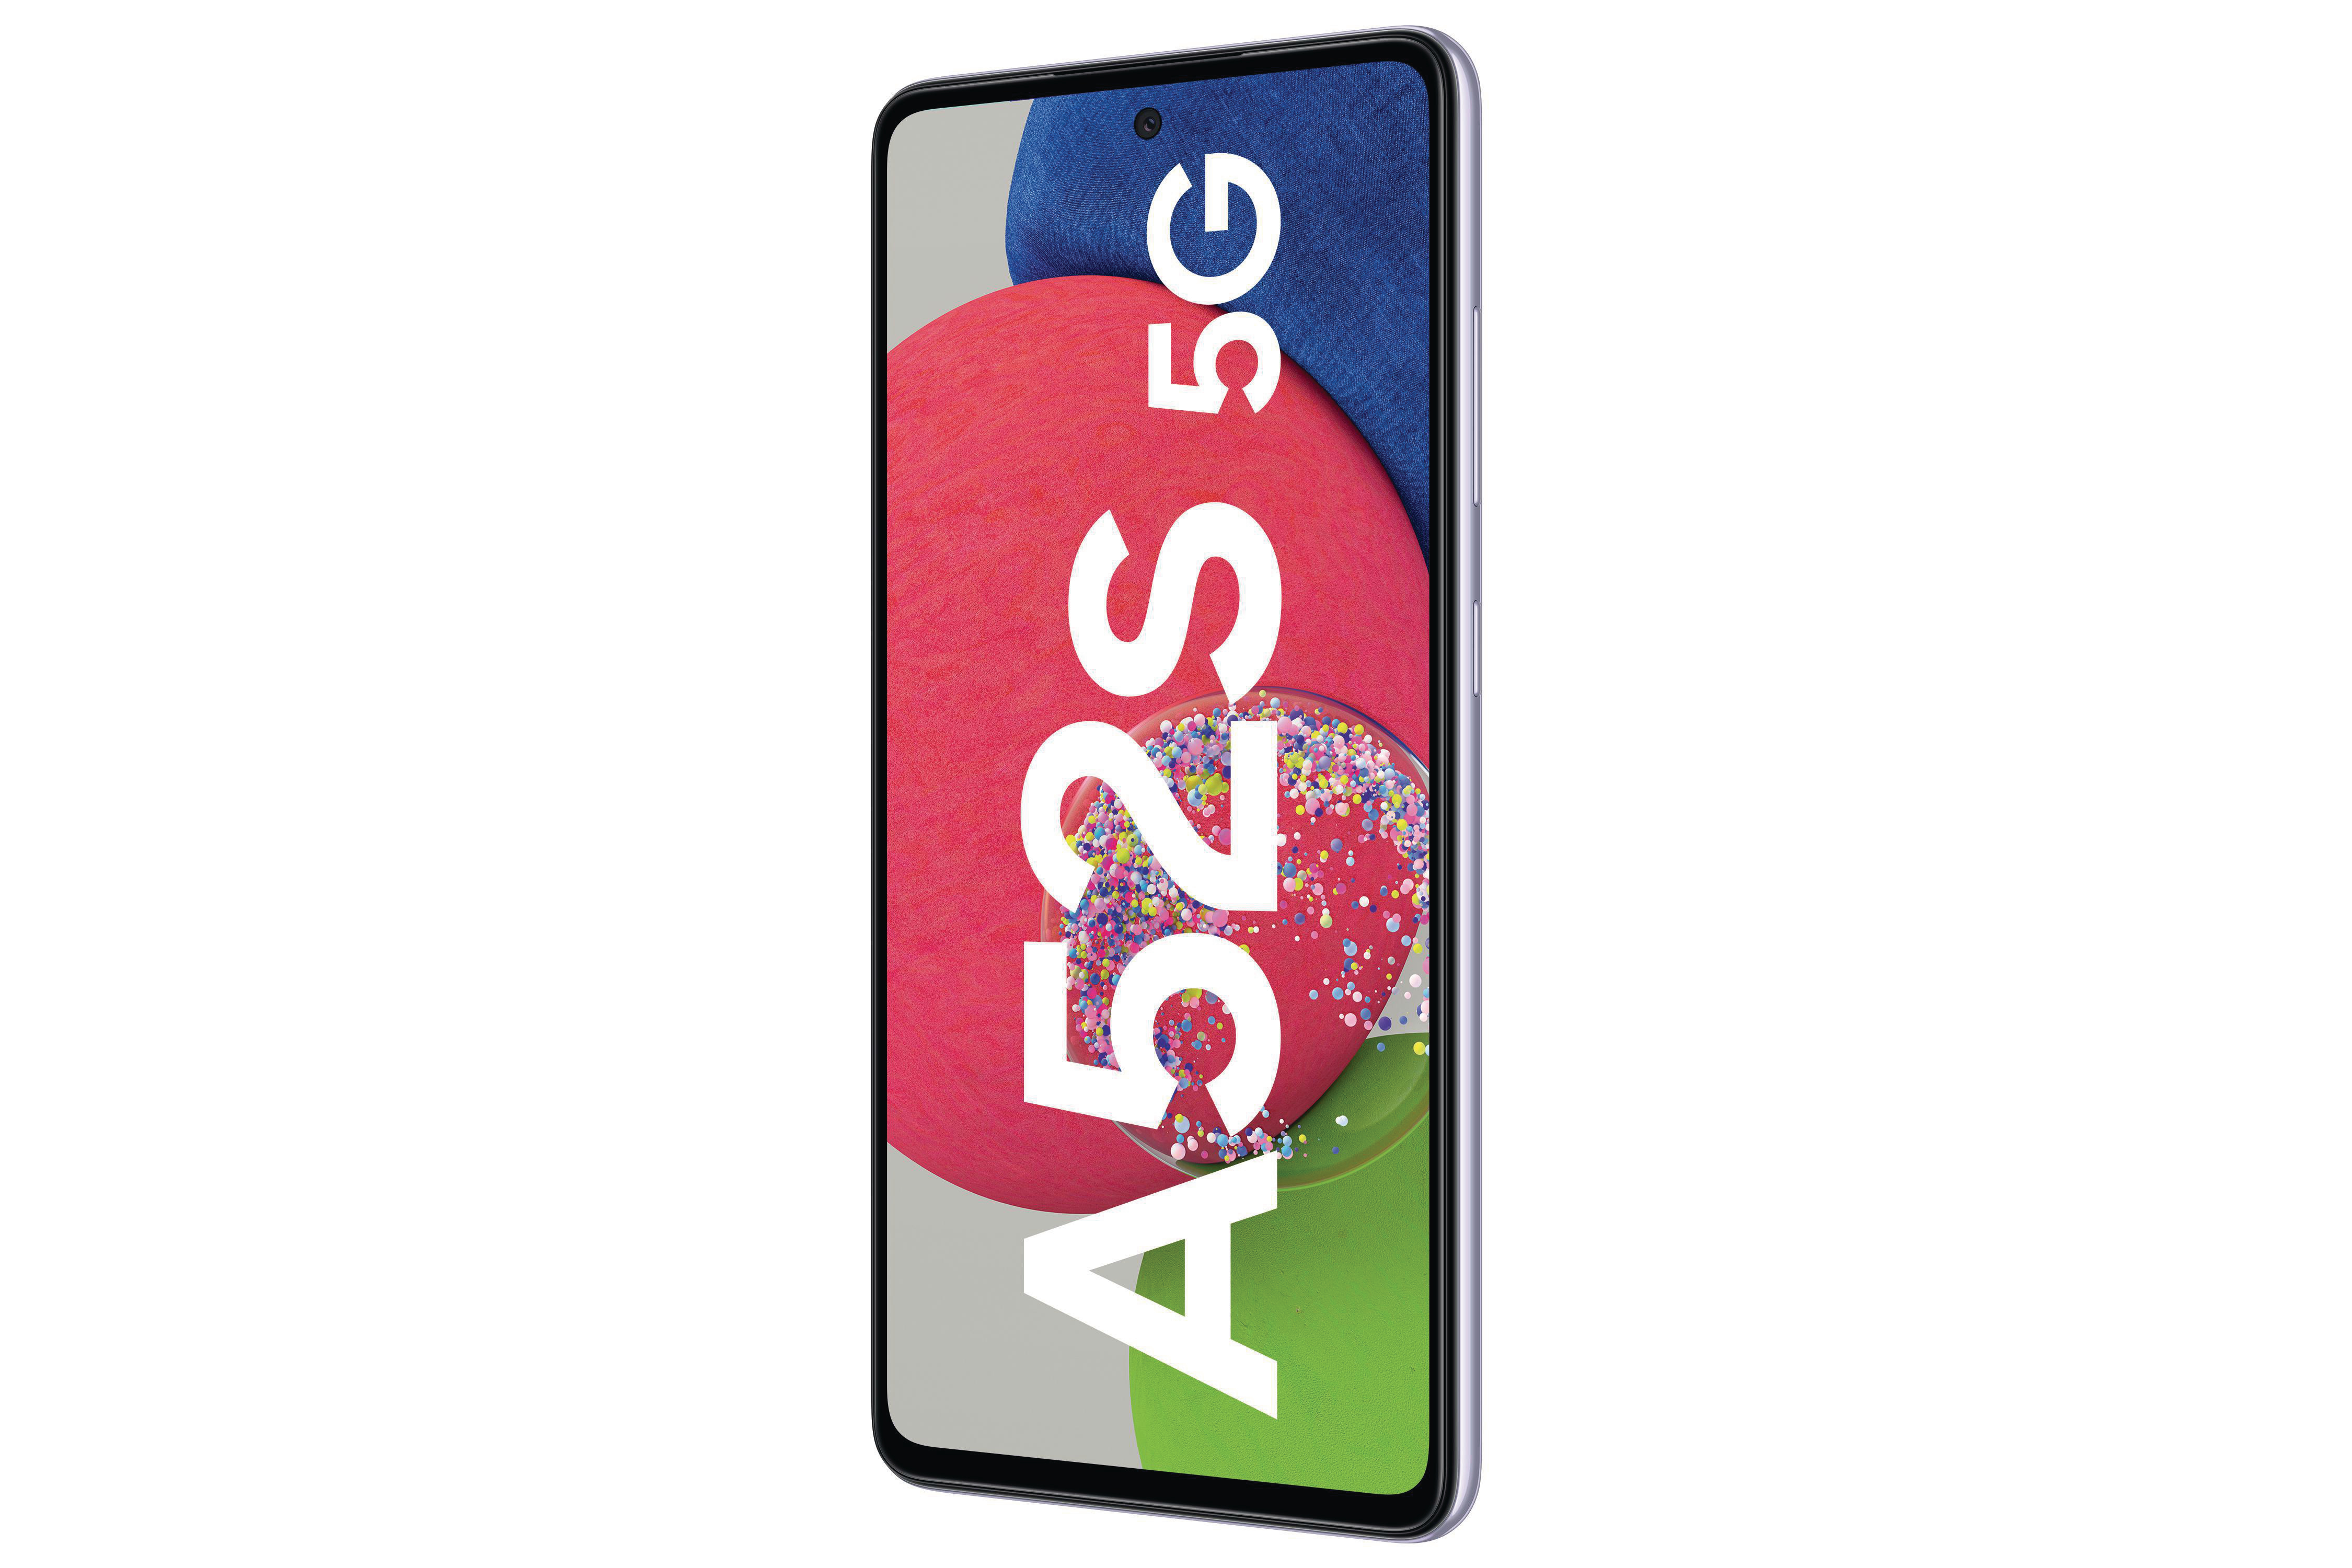 SAMSUNG Galaxy 5G SIM Violet Awesome A52s Dual GB 256